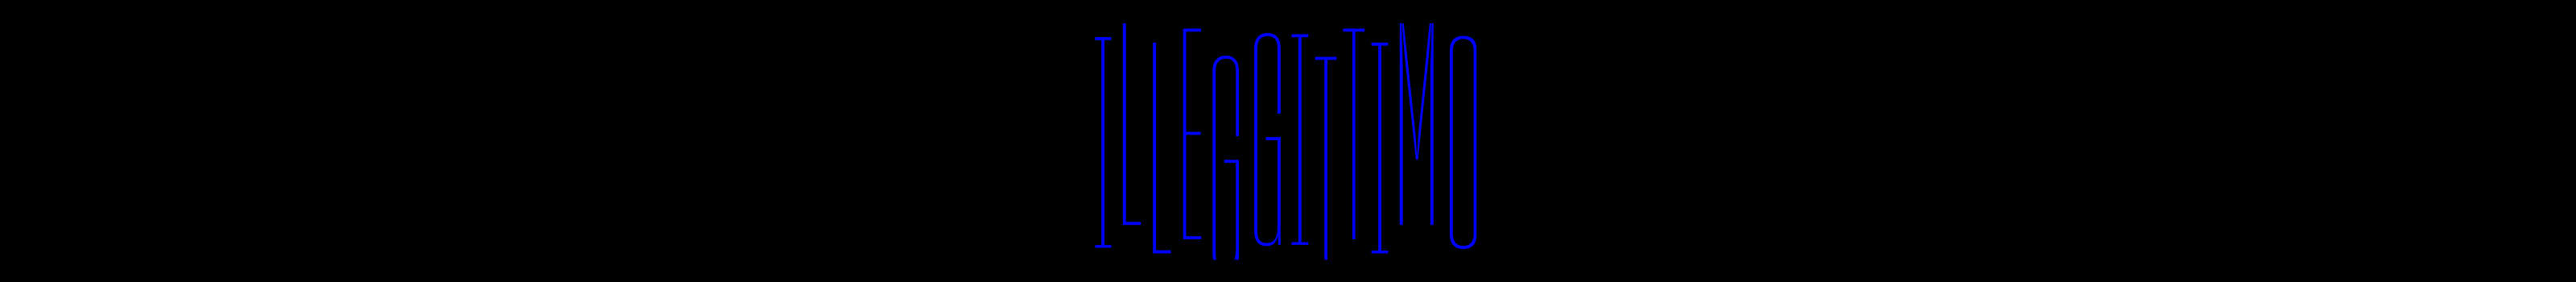 Salvatore Illeggittimo's profile banner